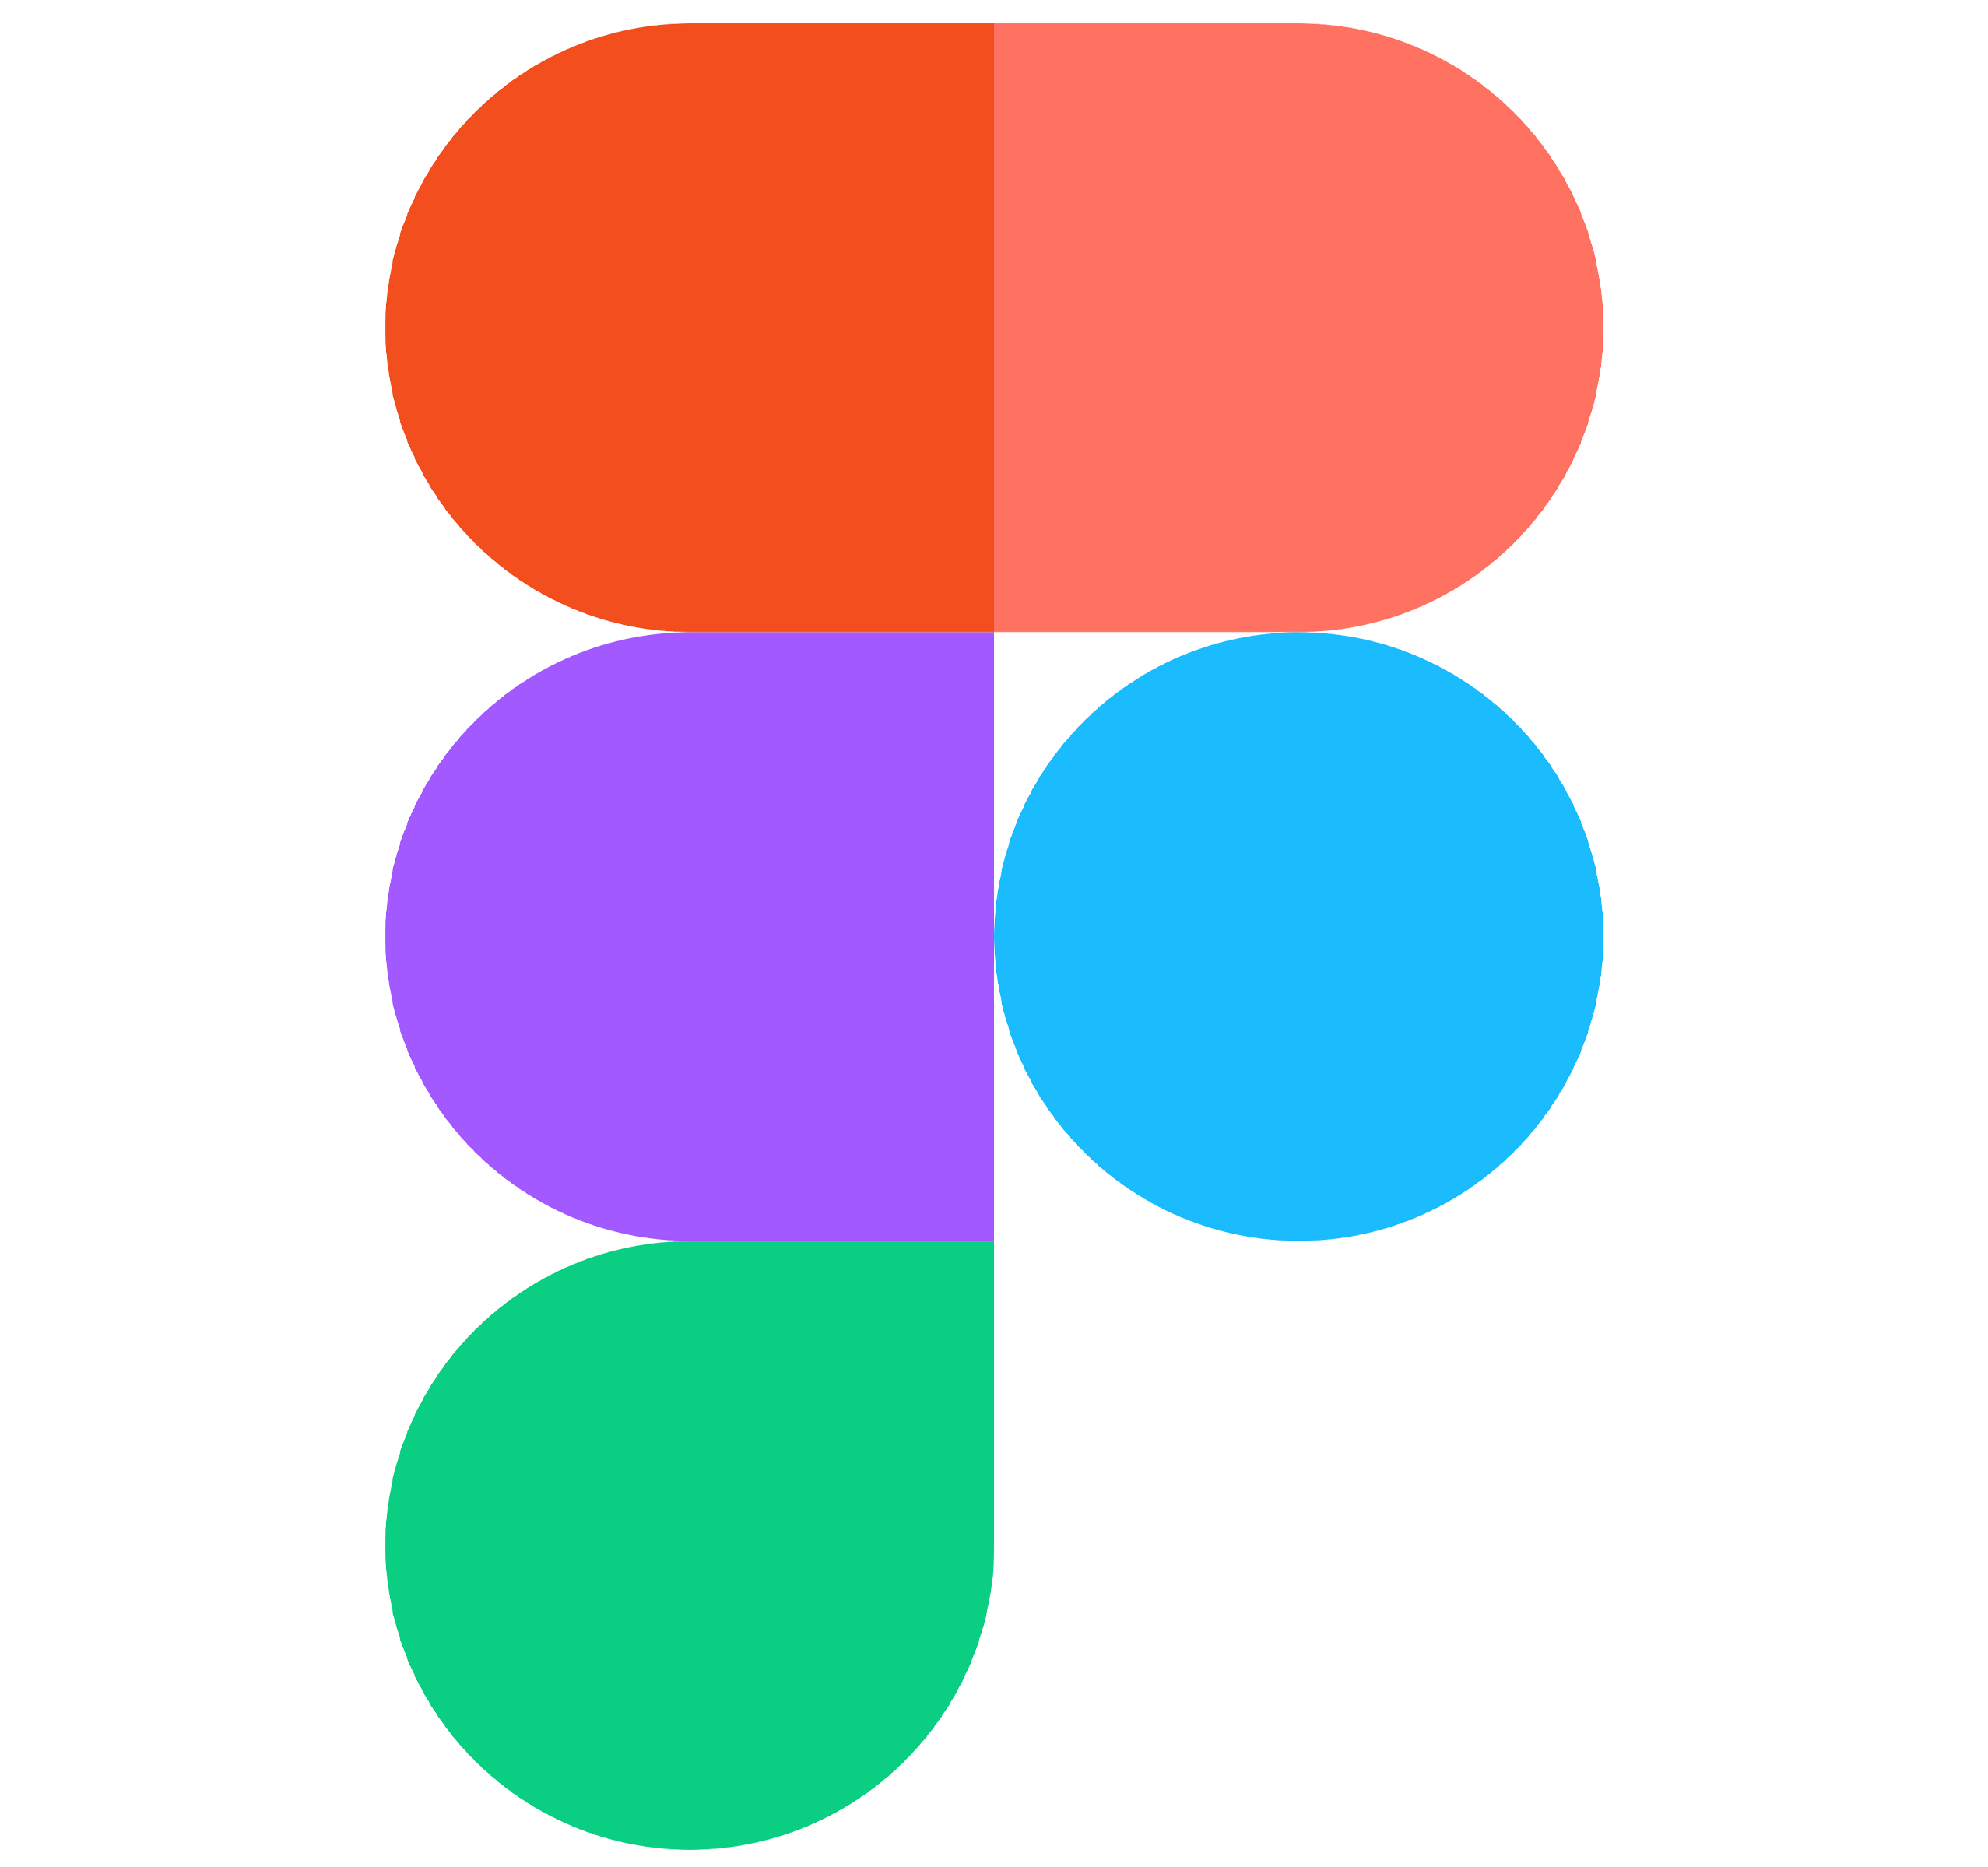 figma logo